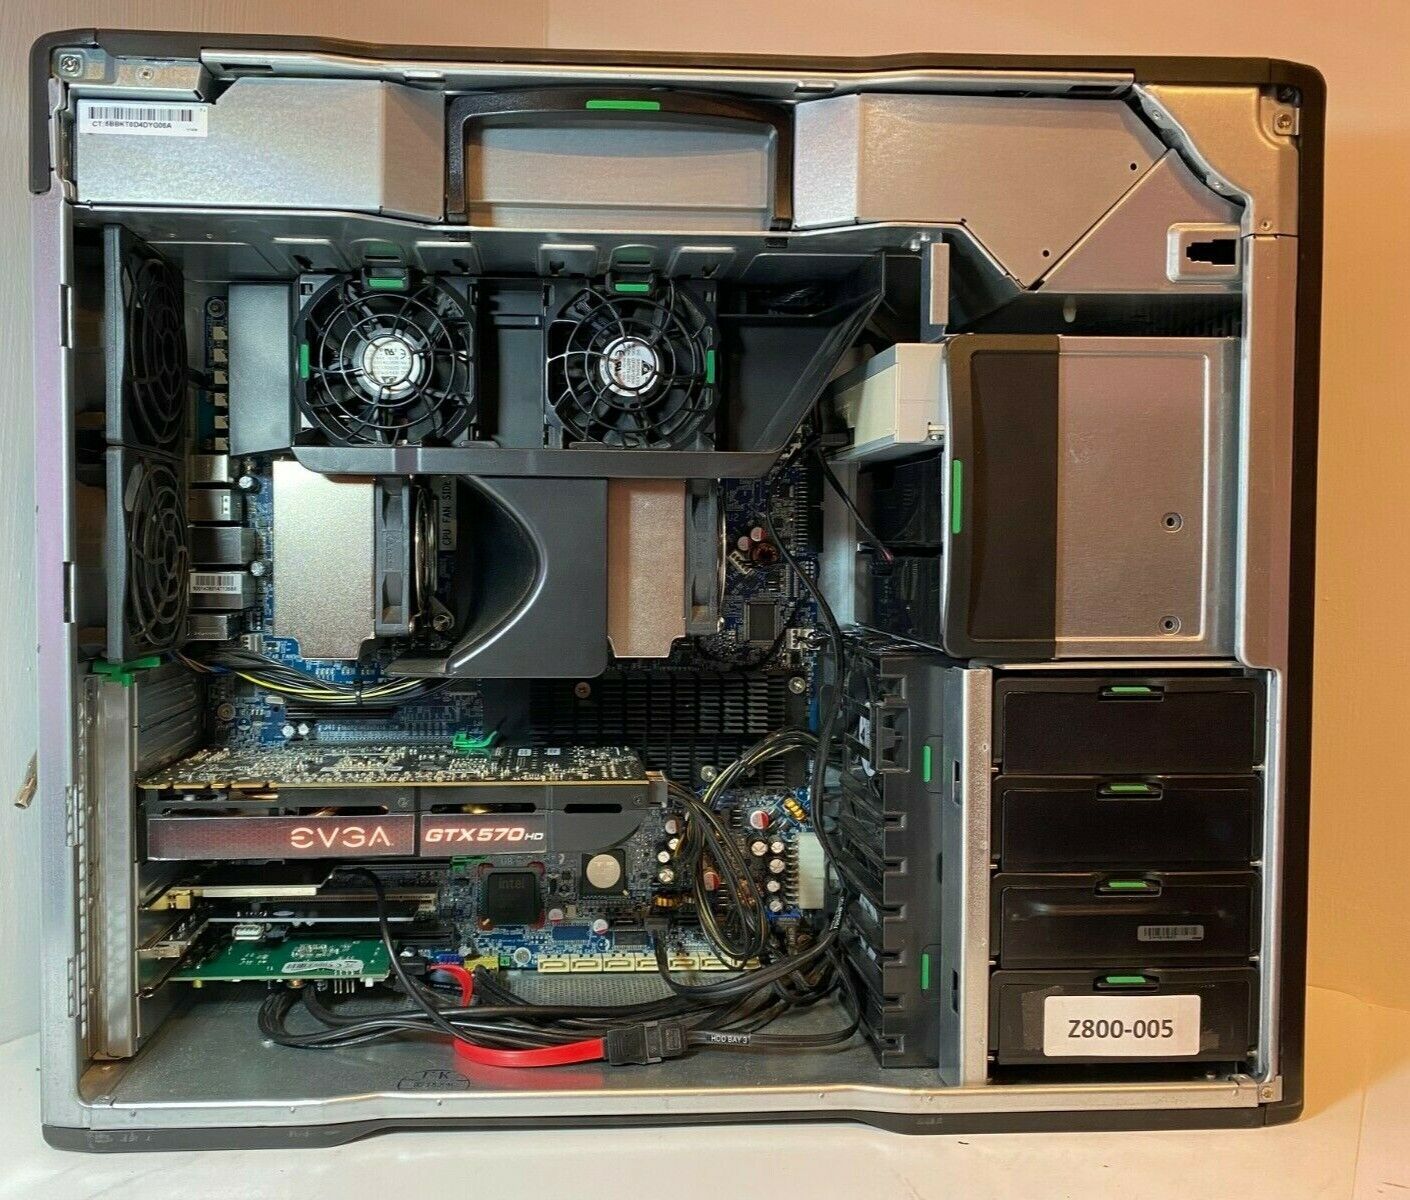 HP Z800 Workstation 2x Xeon 5675's @ 3.06 GHz 12 Cores / 24 Thread